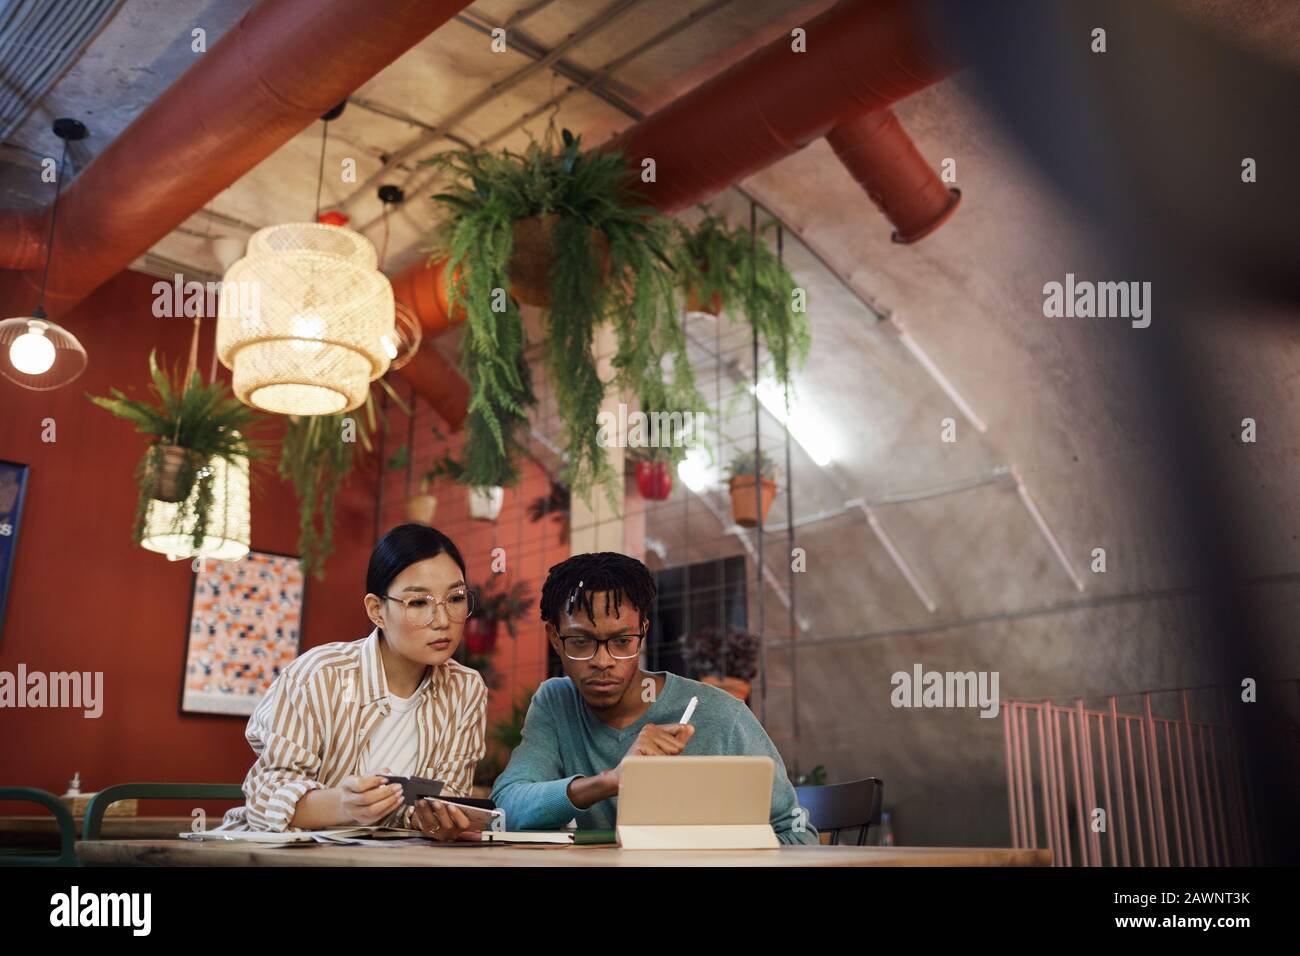 Portrait grand angle de deux étudiants contemporains travaillant ensemble sur le projet tout en étant assis à la table dans un café, espace de copie Banque D'Images